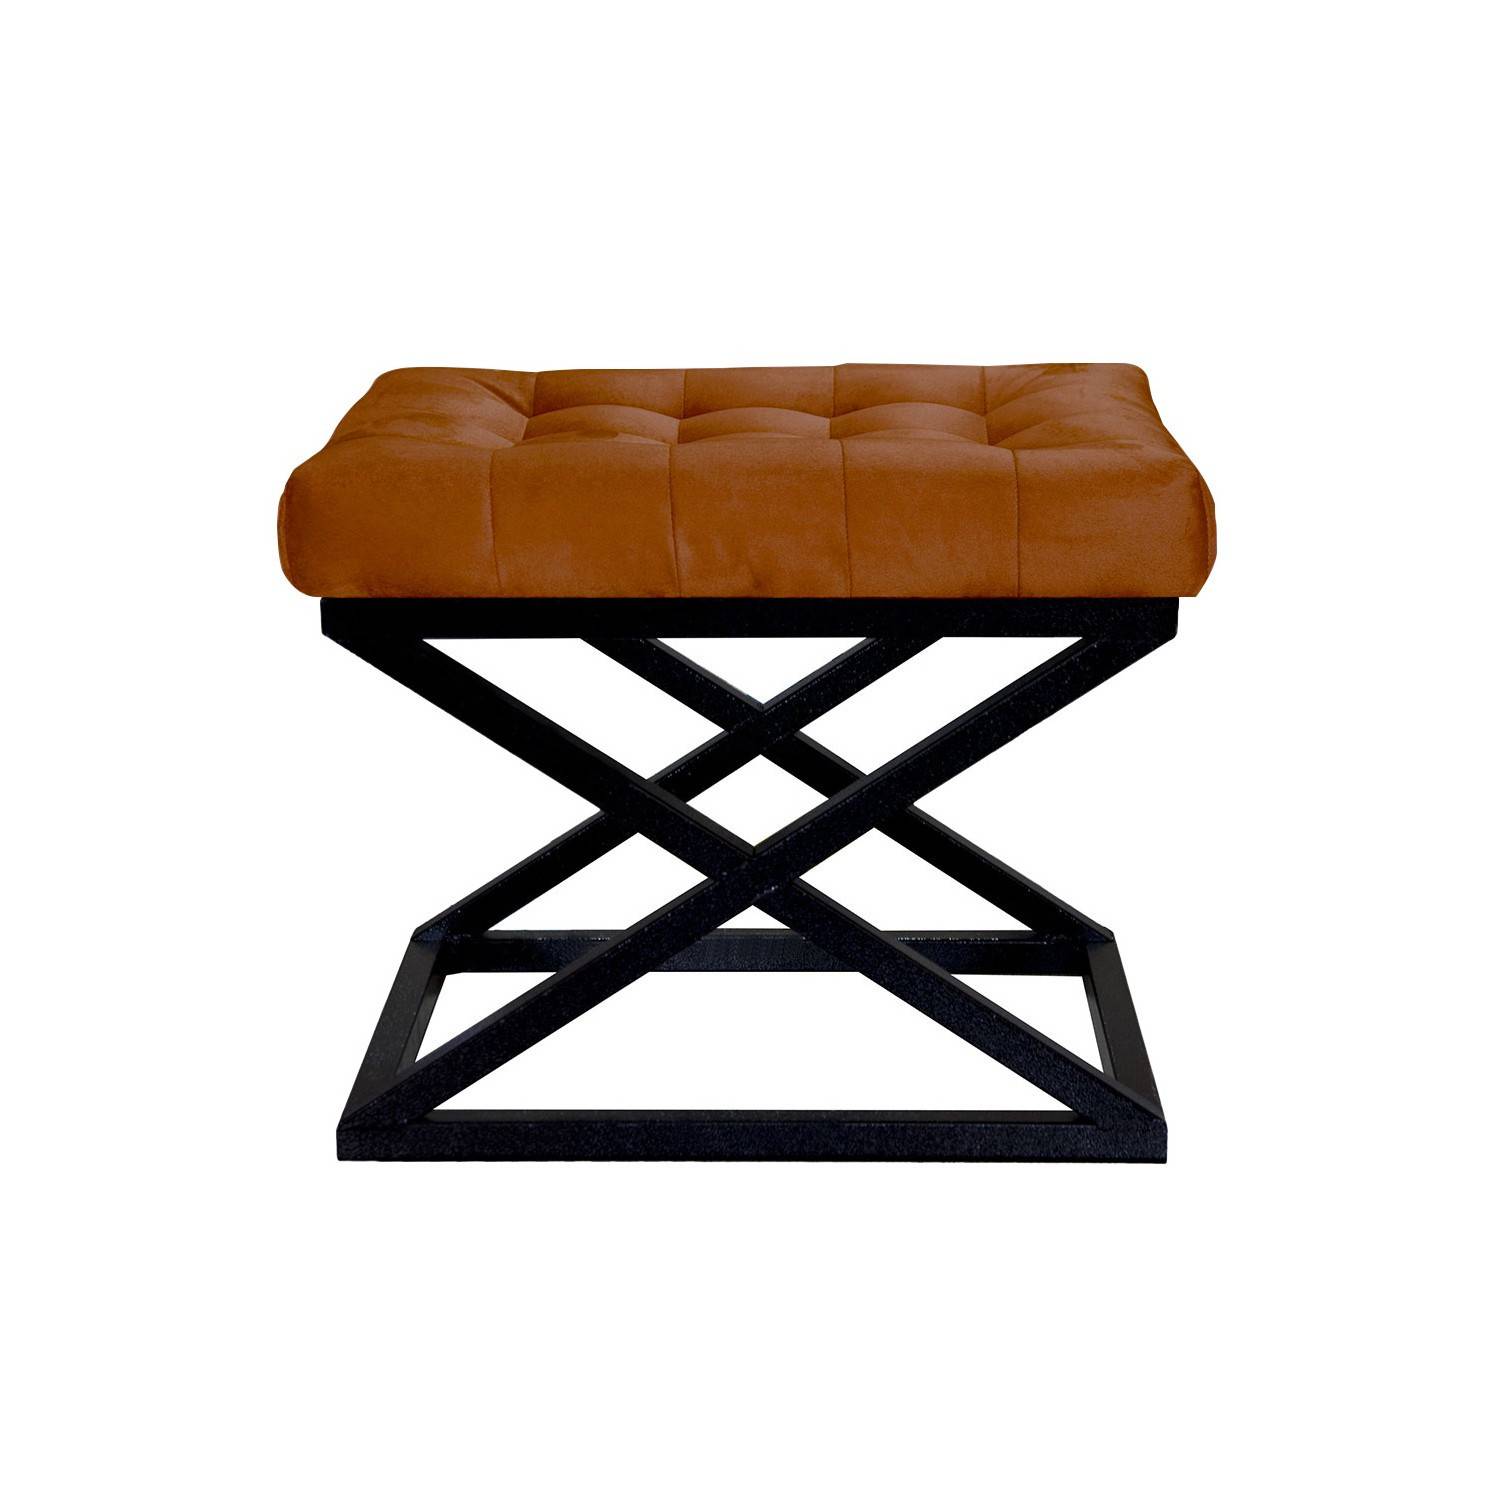 Taburete Ulad de metal negro y terciopelo terracota, asiento tapizado